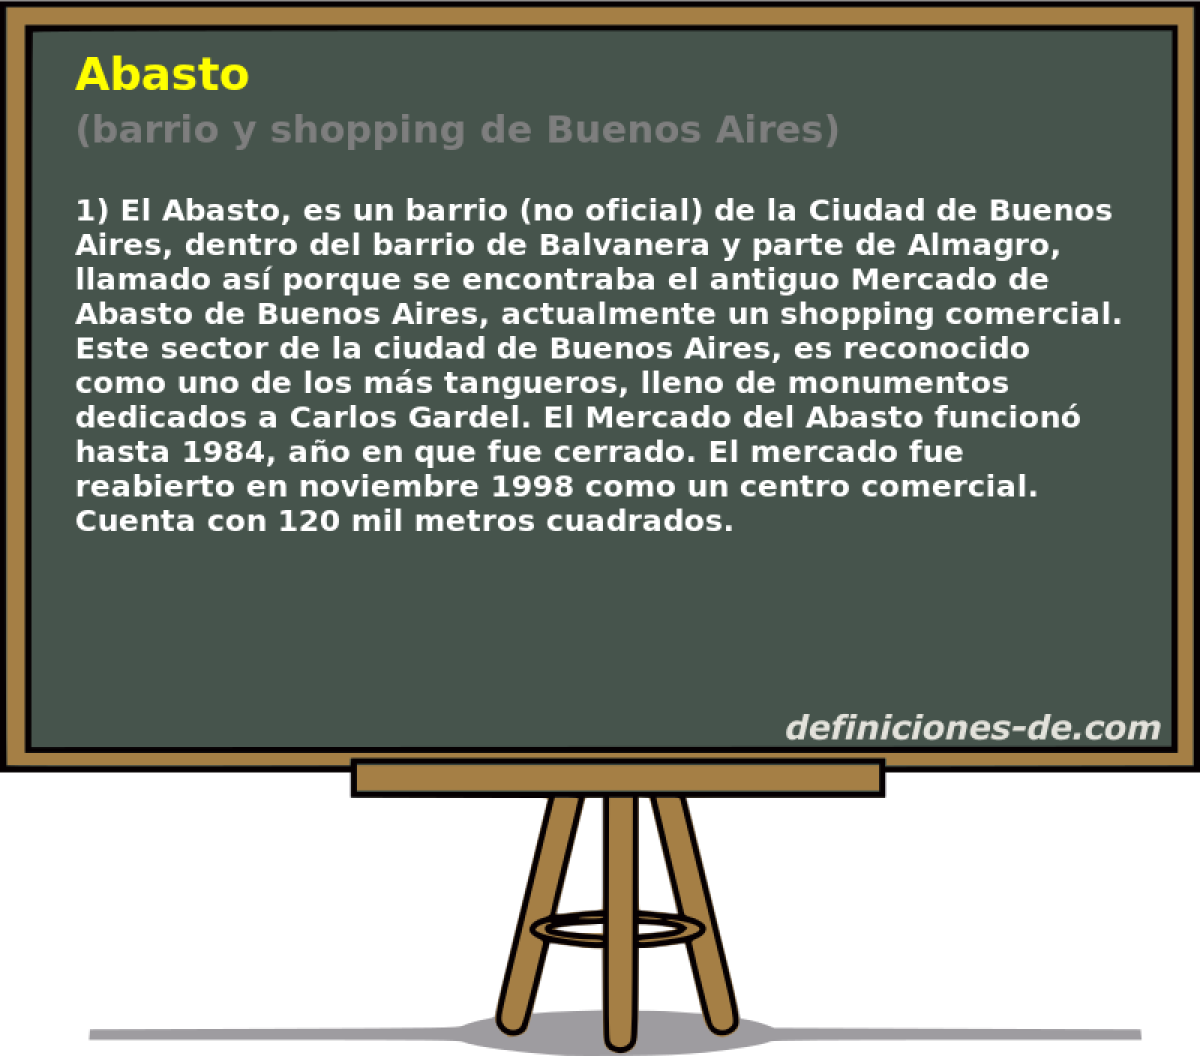 Abasto (barrio y shopping de Buenos Aires)